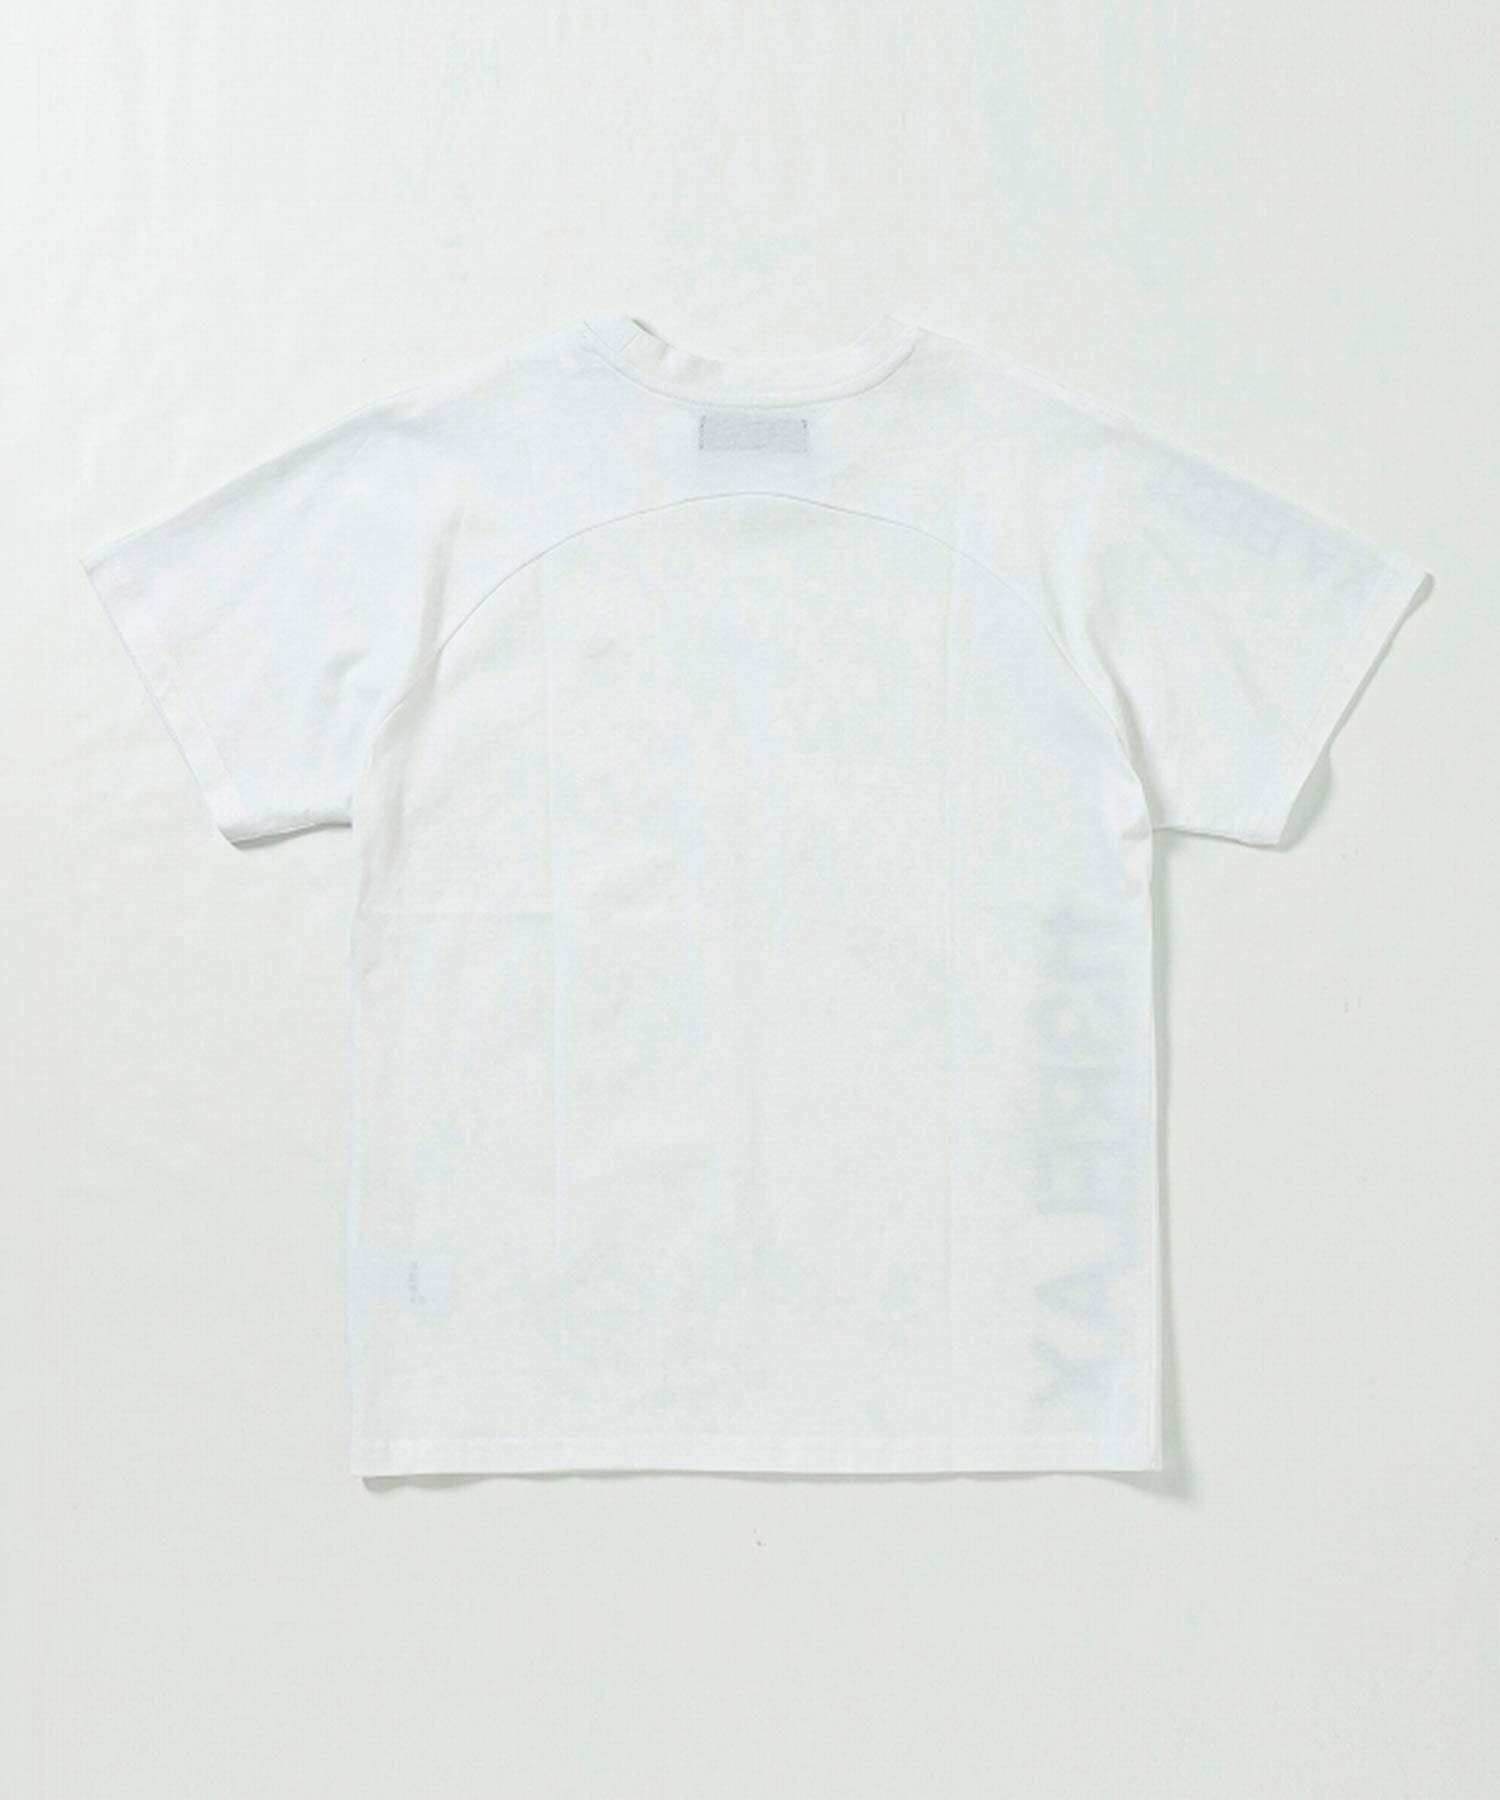 1PIU1UGUALE3 RELAX/(M)UST-24023 ラインストーンサイドロゴ半袖Tシャツ